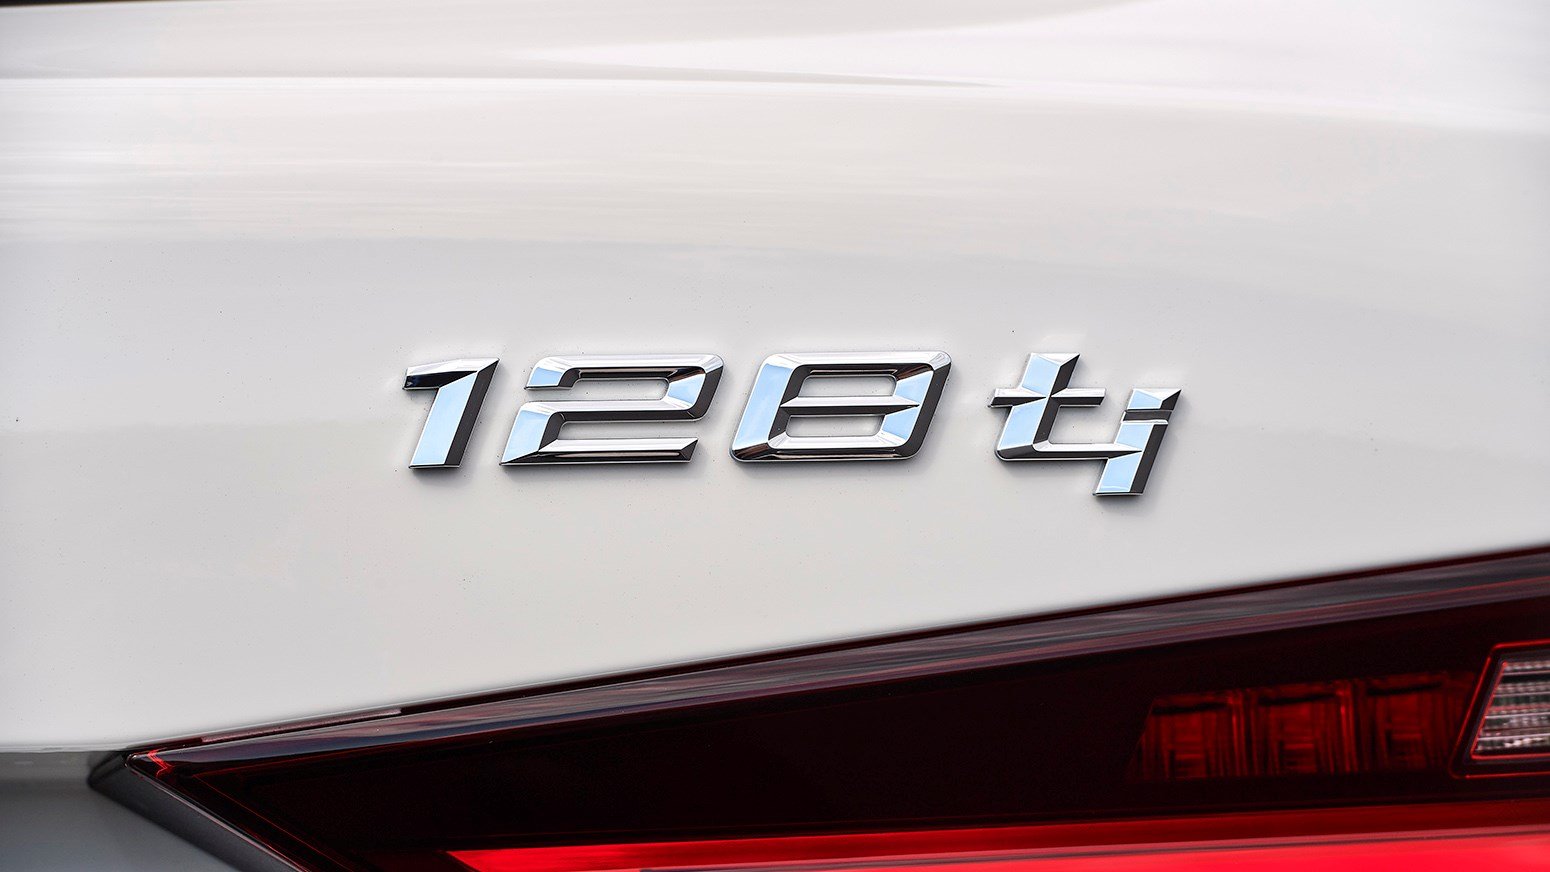 Modelnavn på bagenden af BMW 128Ti